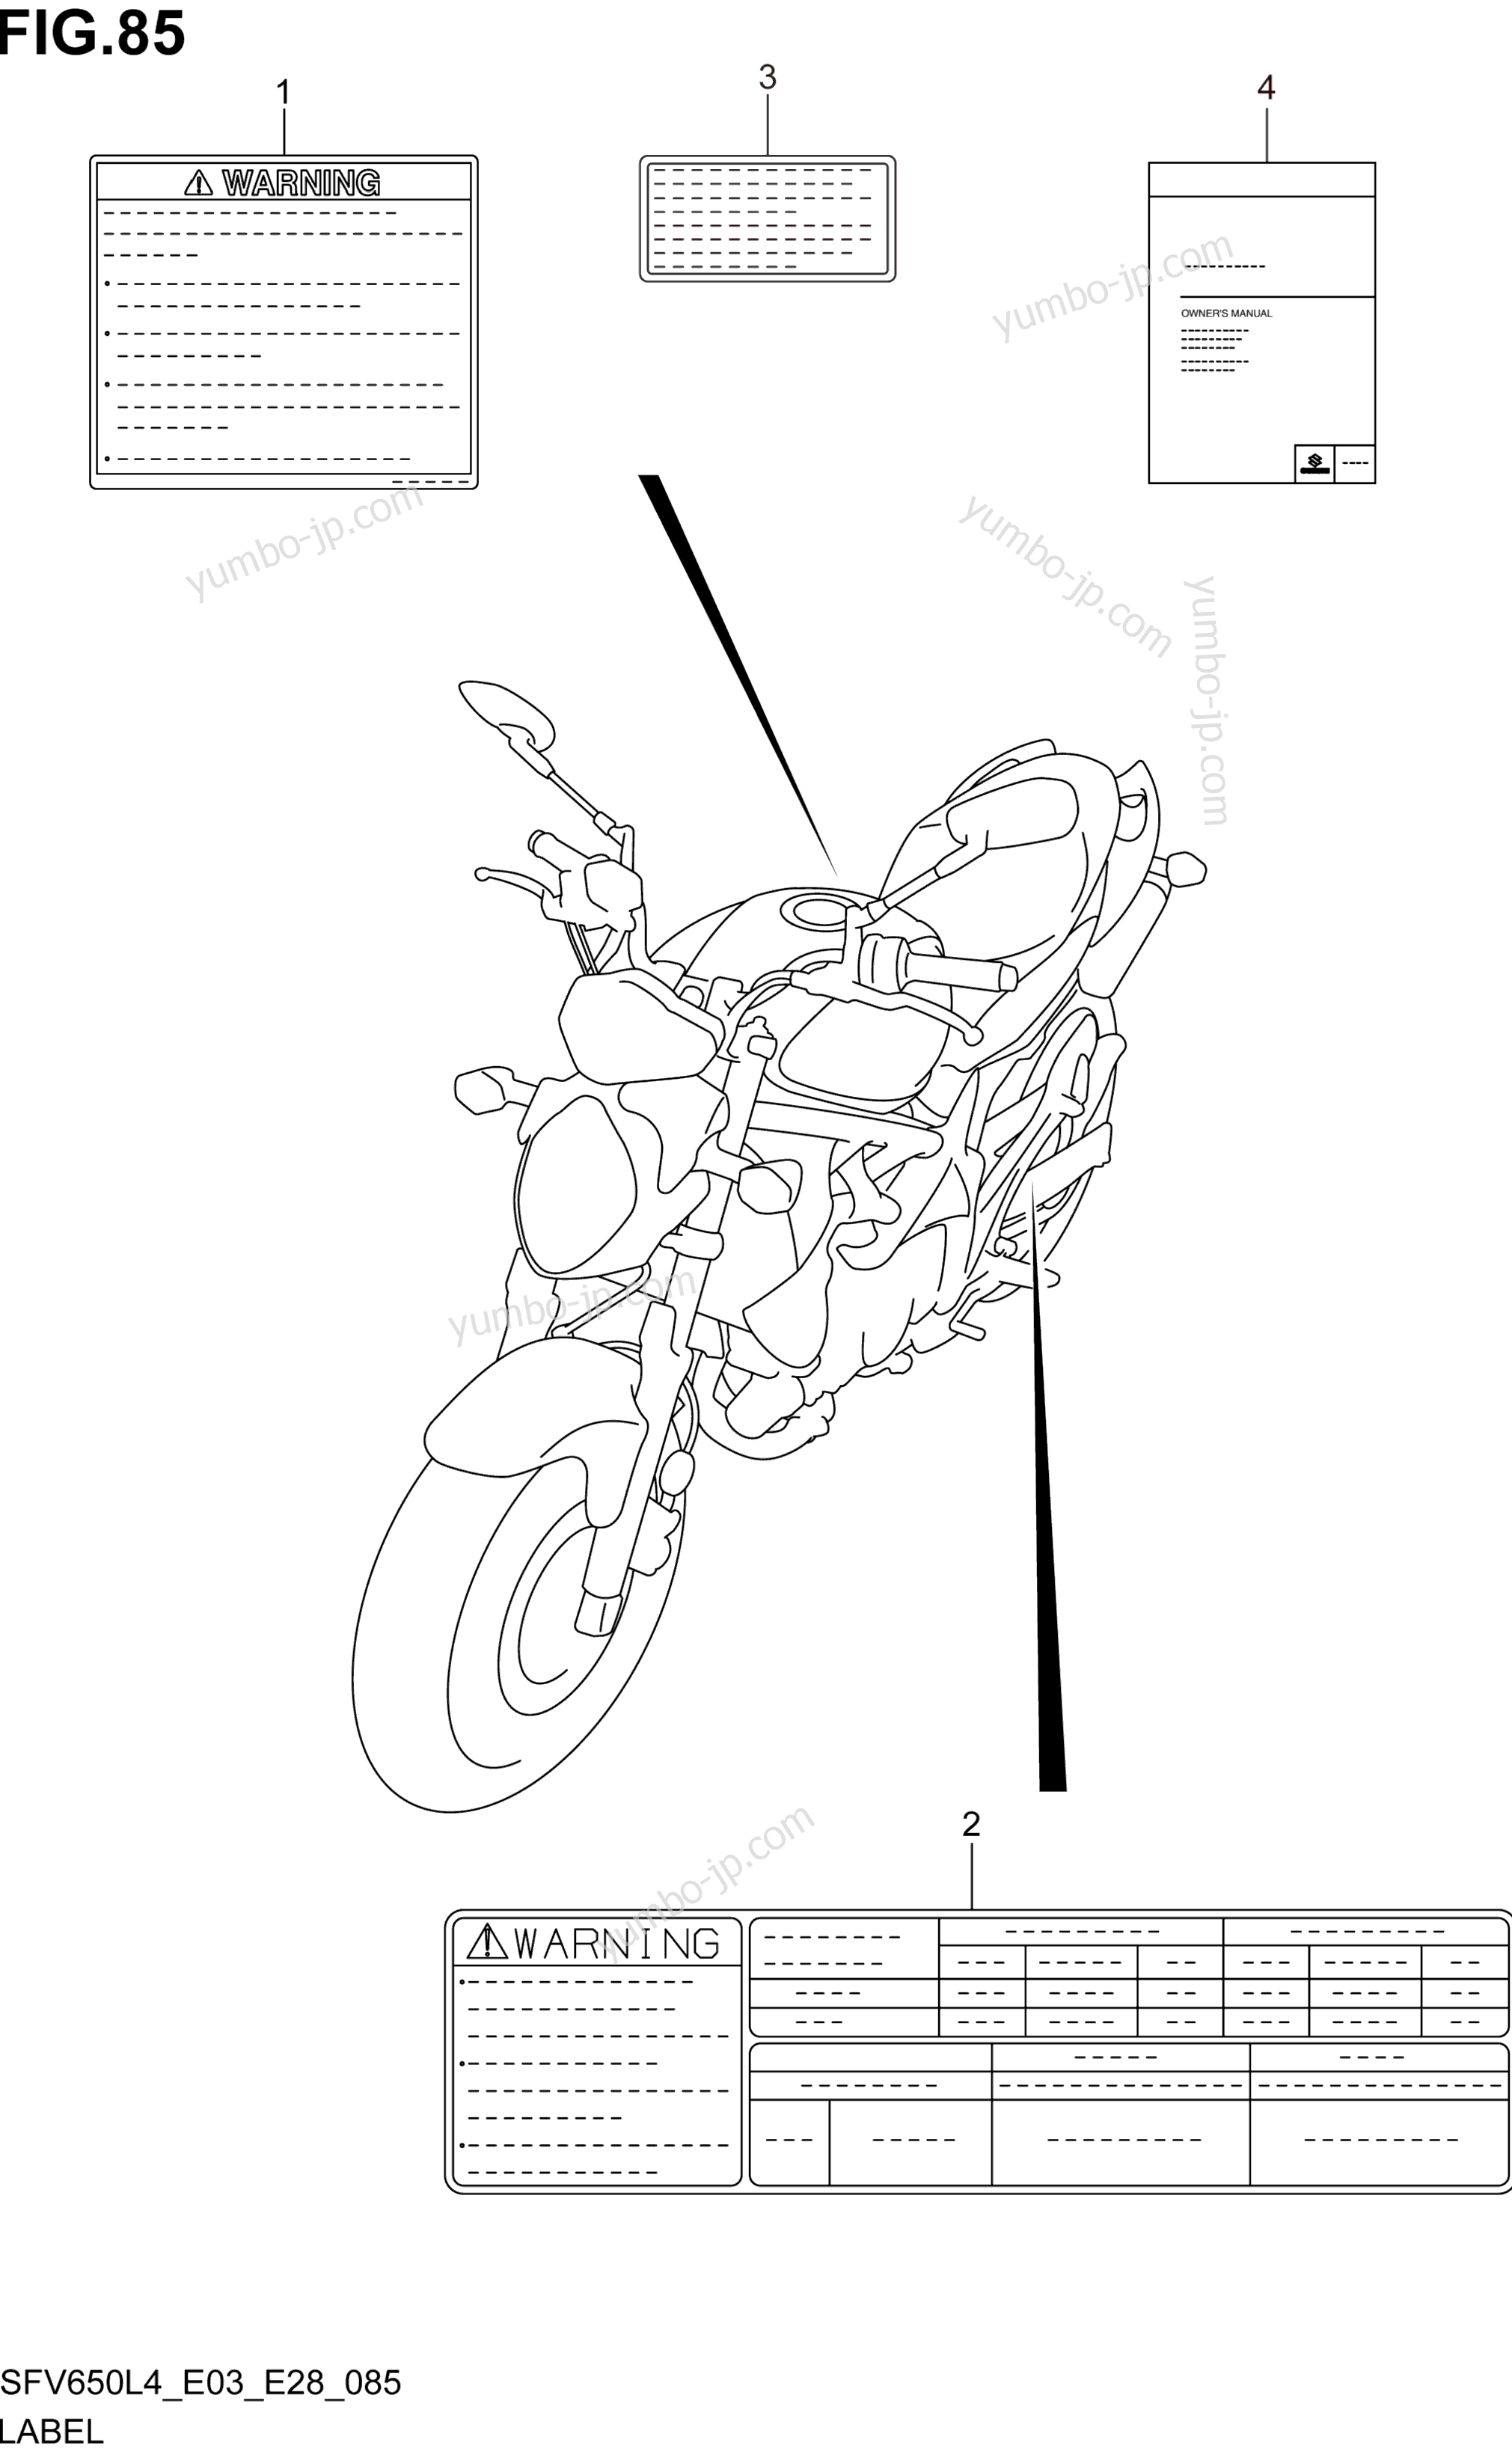 LABEL (SFV650L4 E03) for motorcycles SUZUKI SFV650 2014 year